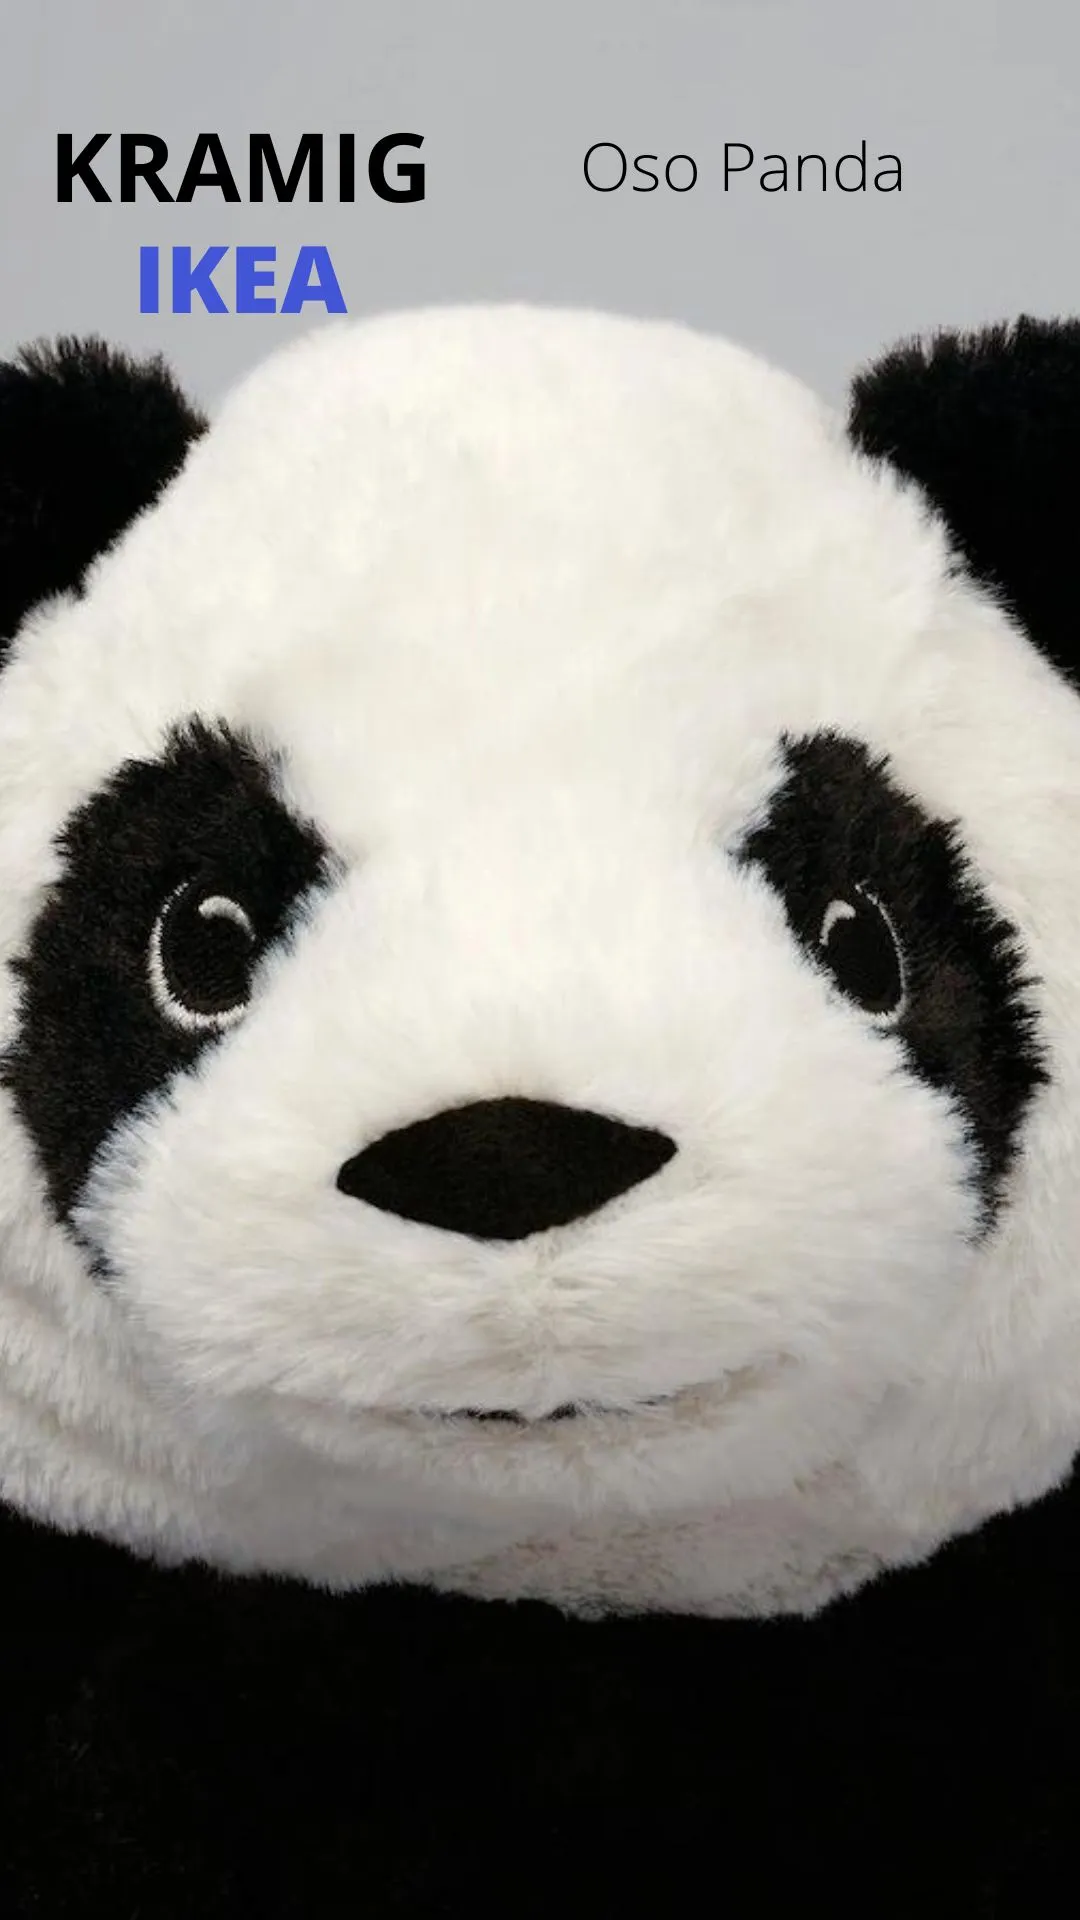 Oso panda Kramig